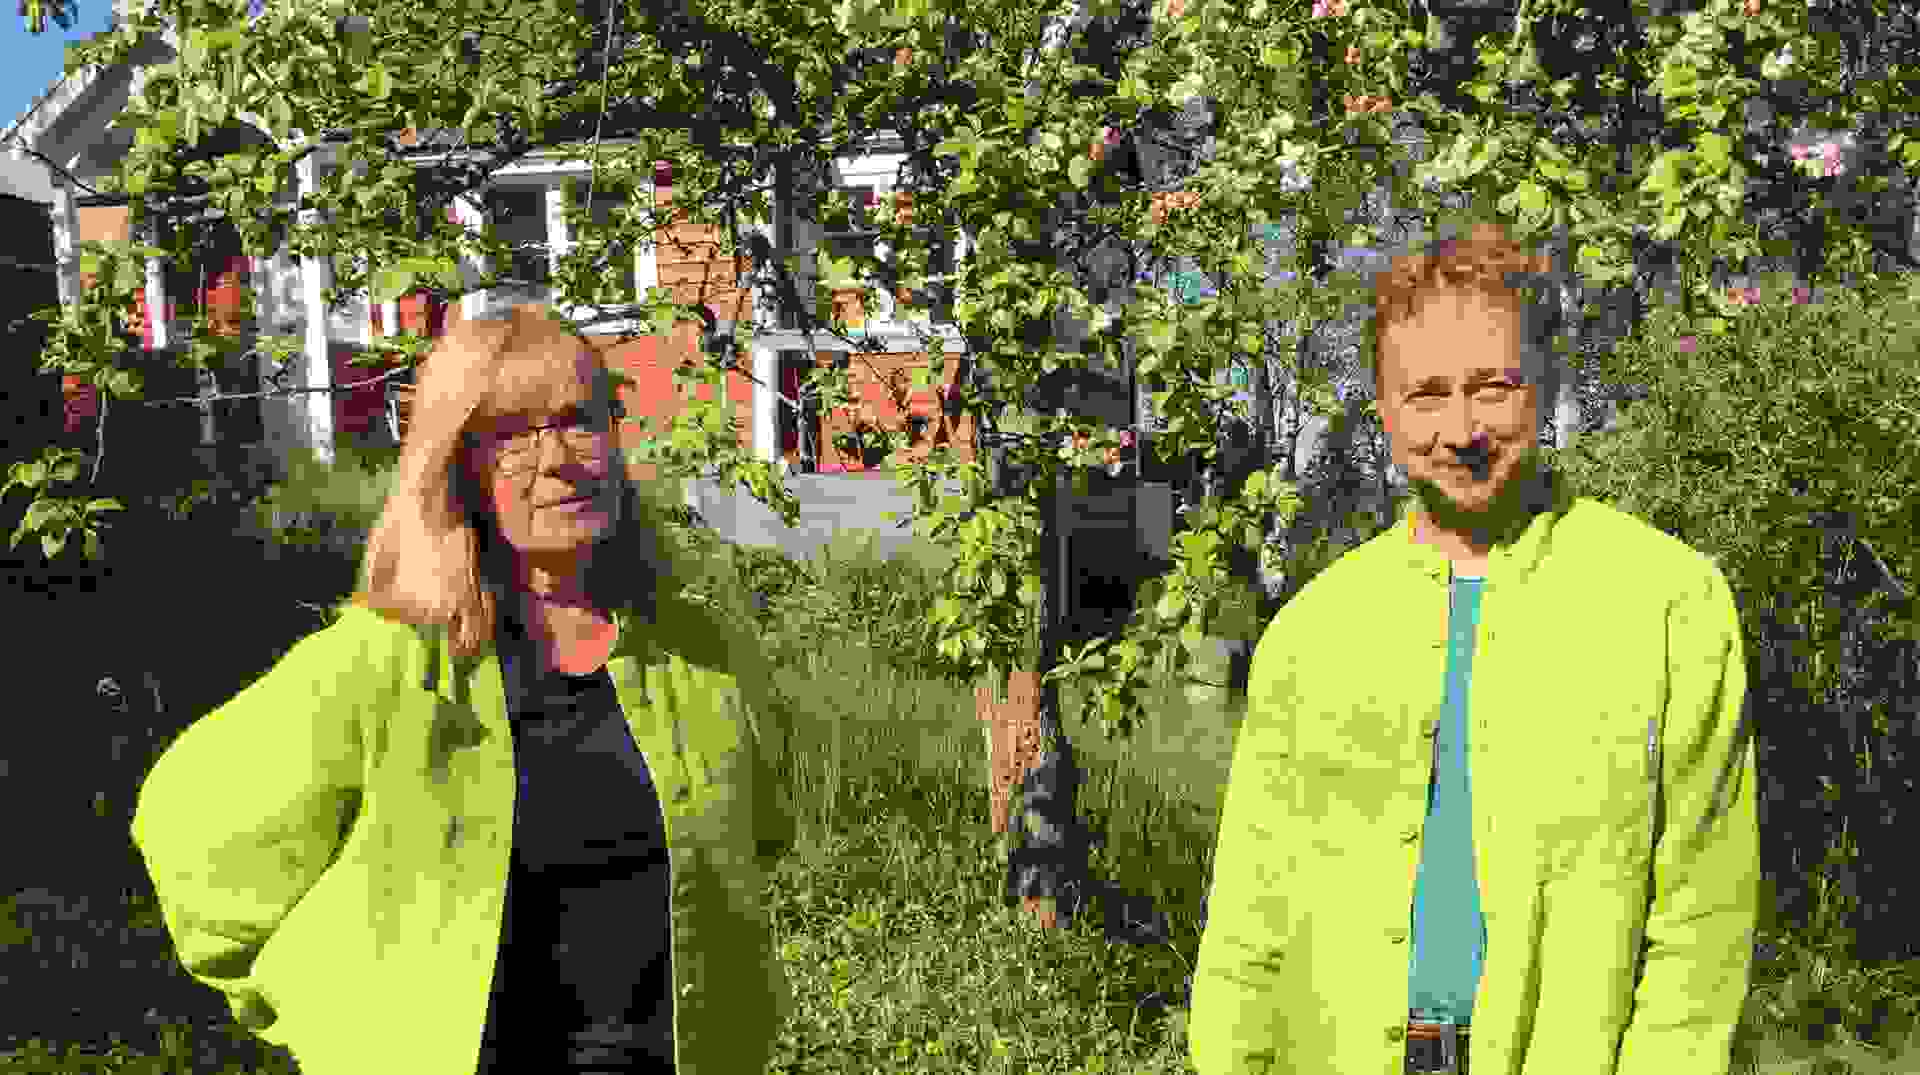 Våra trädgårdsrådgivare Lise-Lotte Björkman och Henrik Bodin